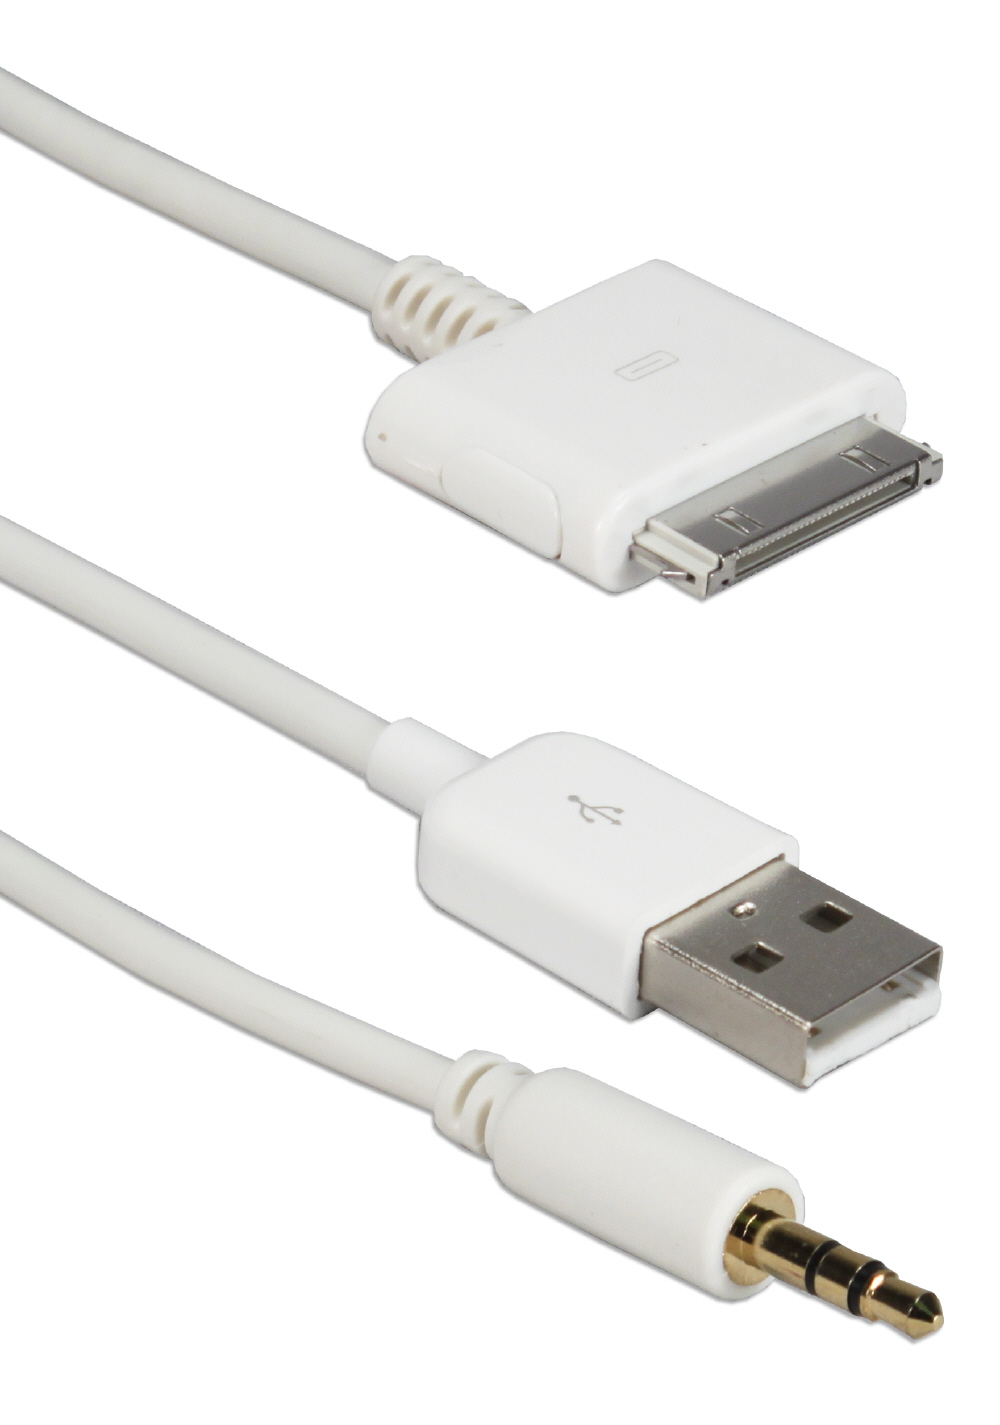 Câble voiture USB 100 cm pour iPhone, iPad, iPod